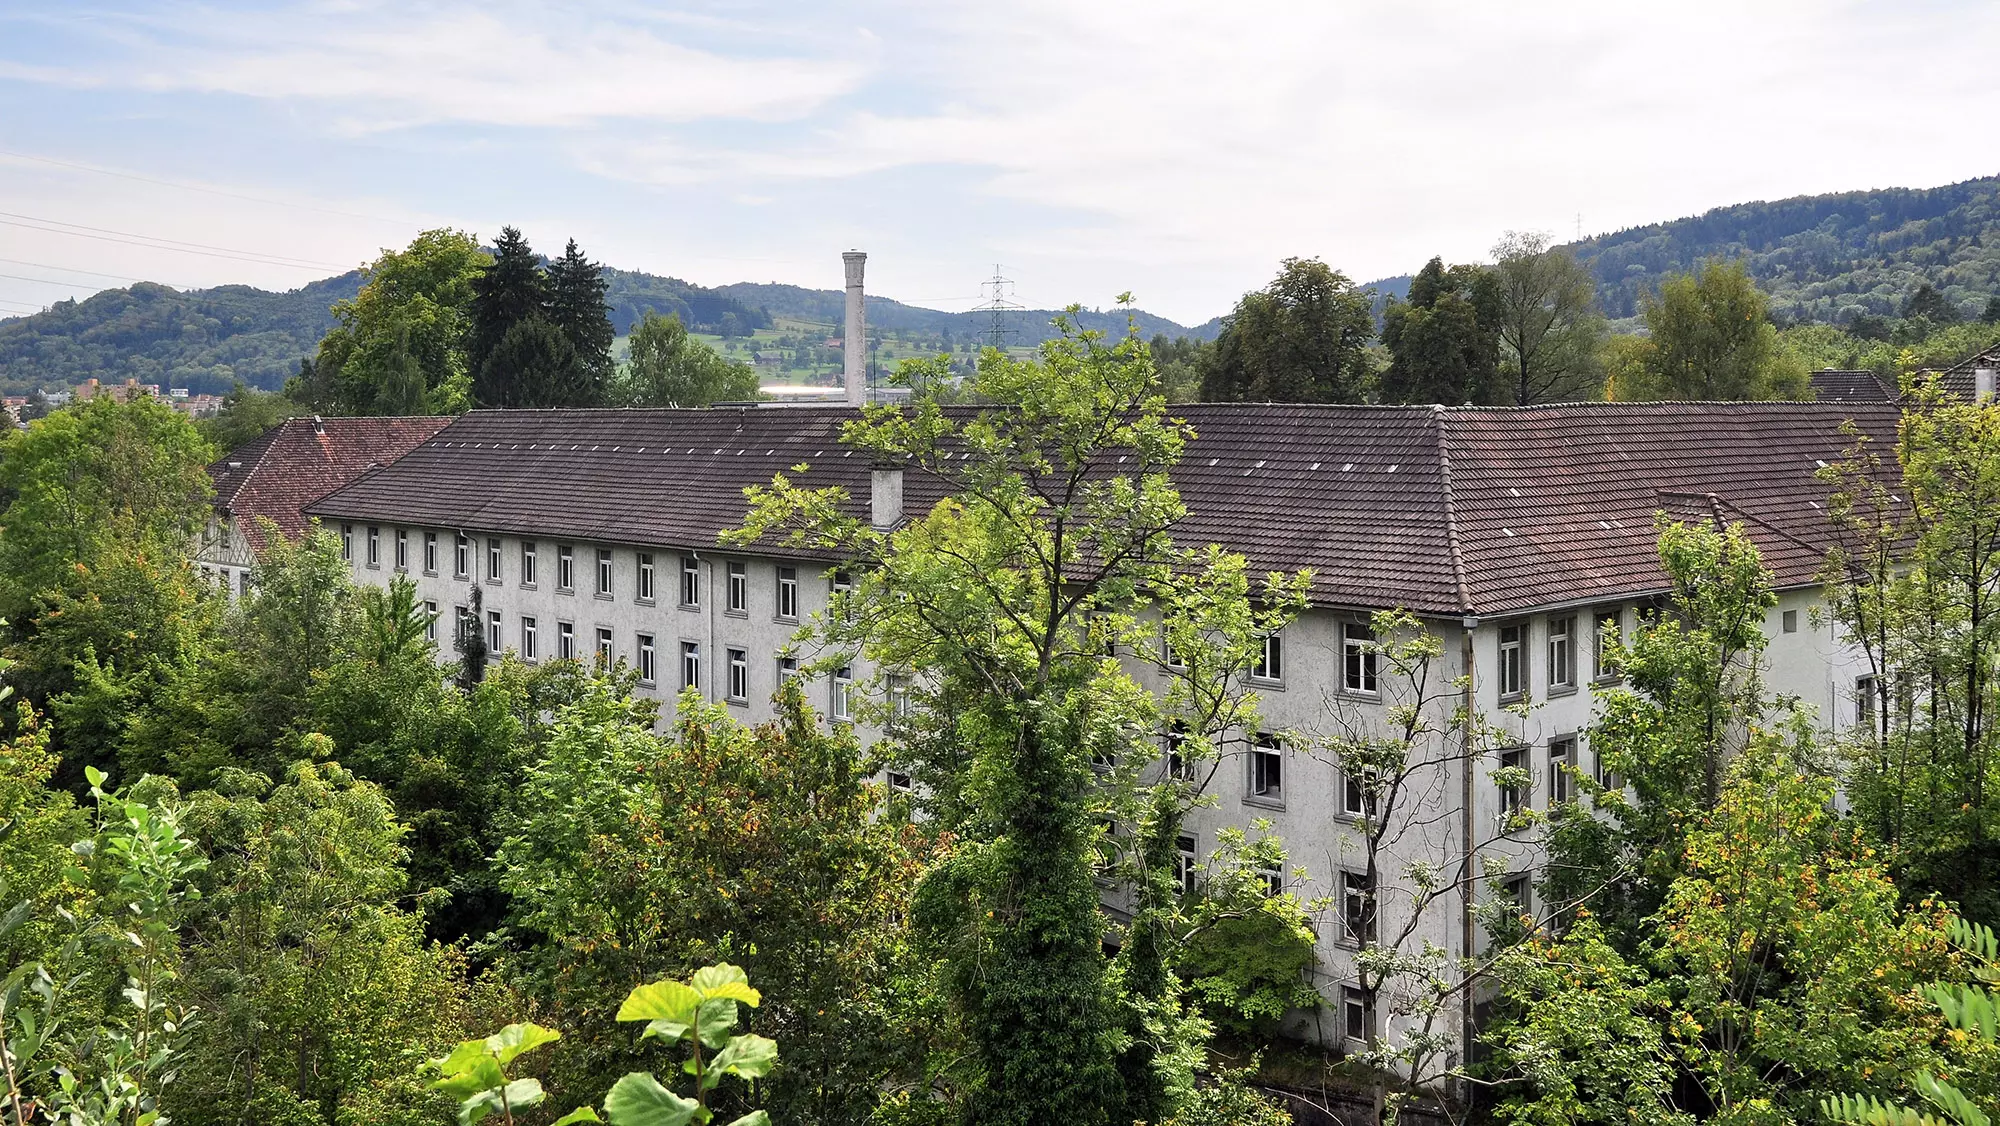 In der ehemaligen Spinnerei Hard am Stadtrand Winterthurs leben und arbeiten heute rund 250 Personen. (Bildquelle: Roland zh, Wikimedia Commons)